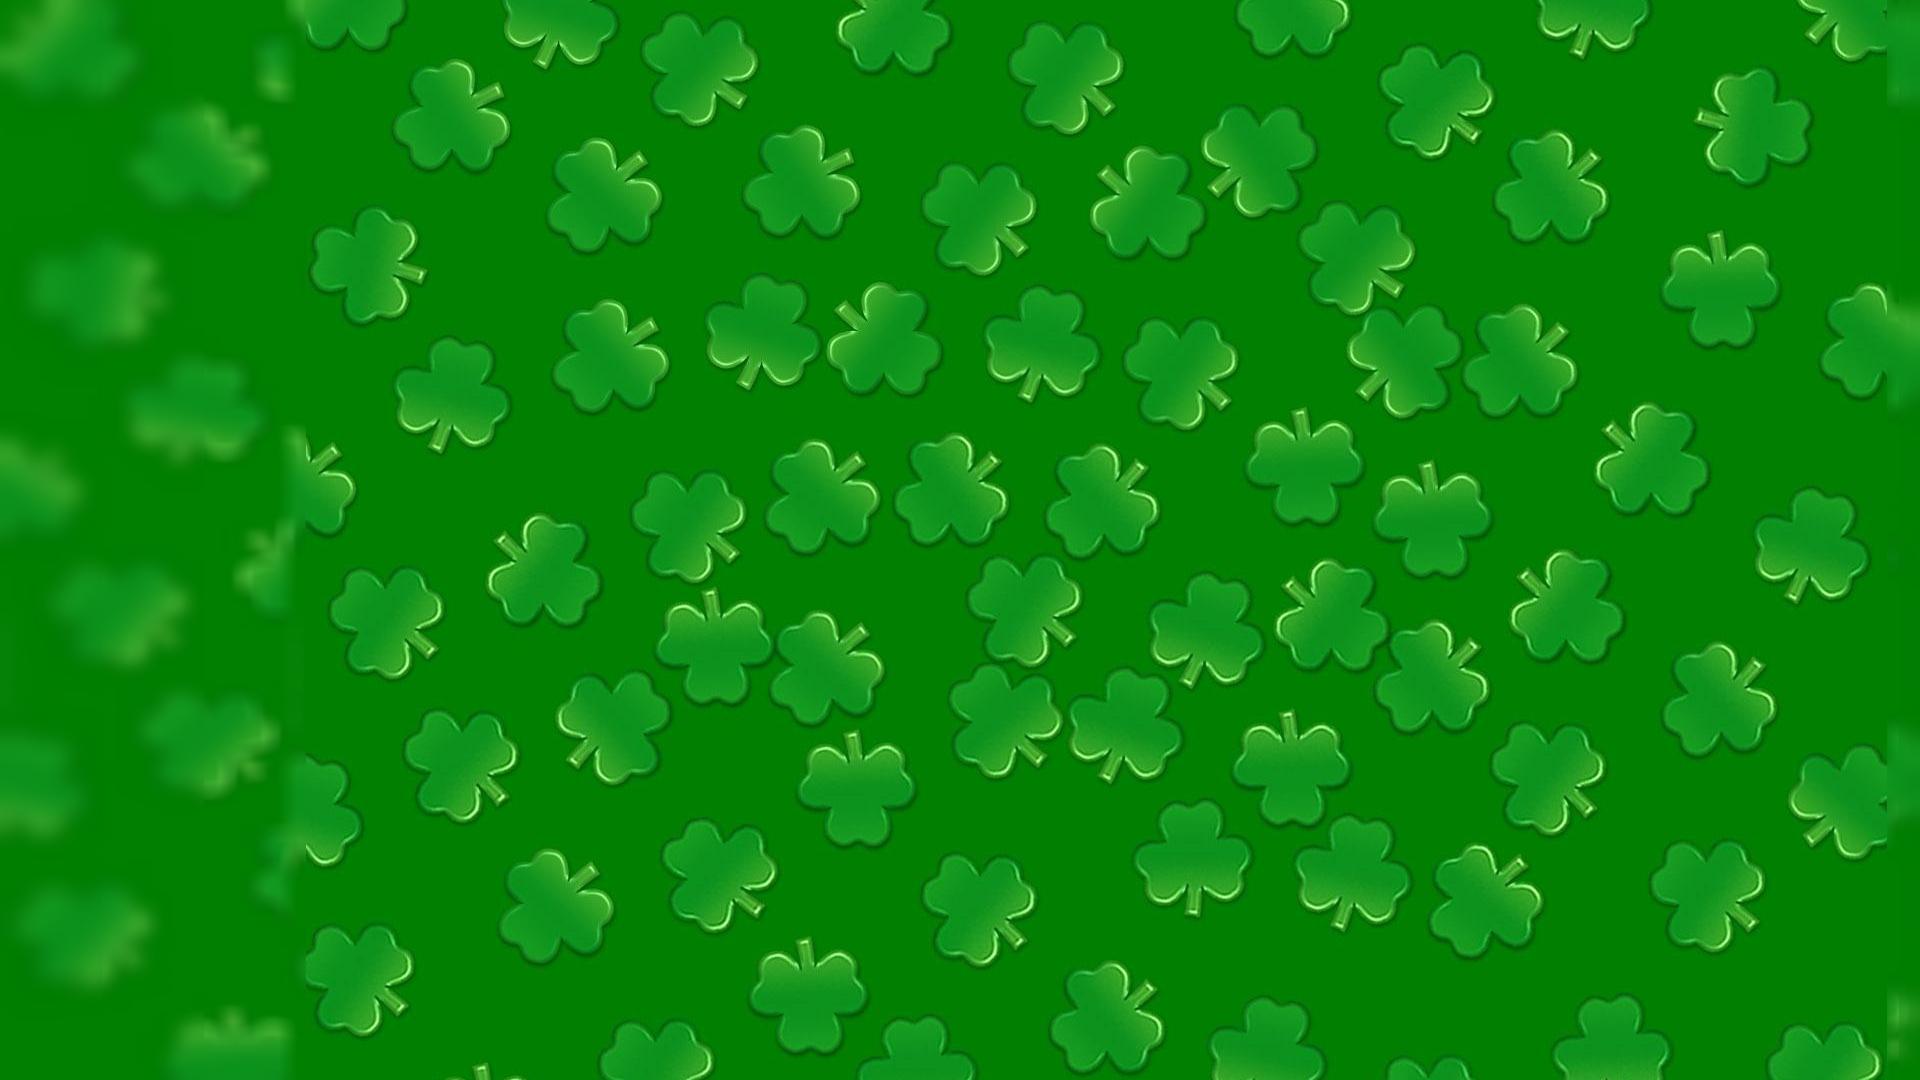 Unique St. Patricks Day Desktop Background Images, Pictures Free